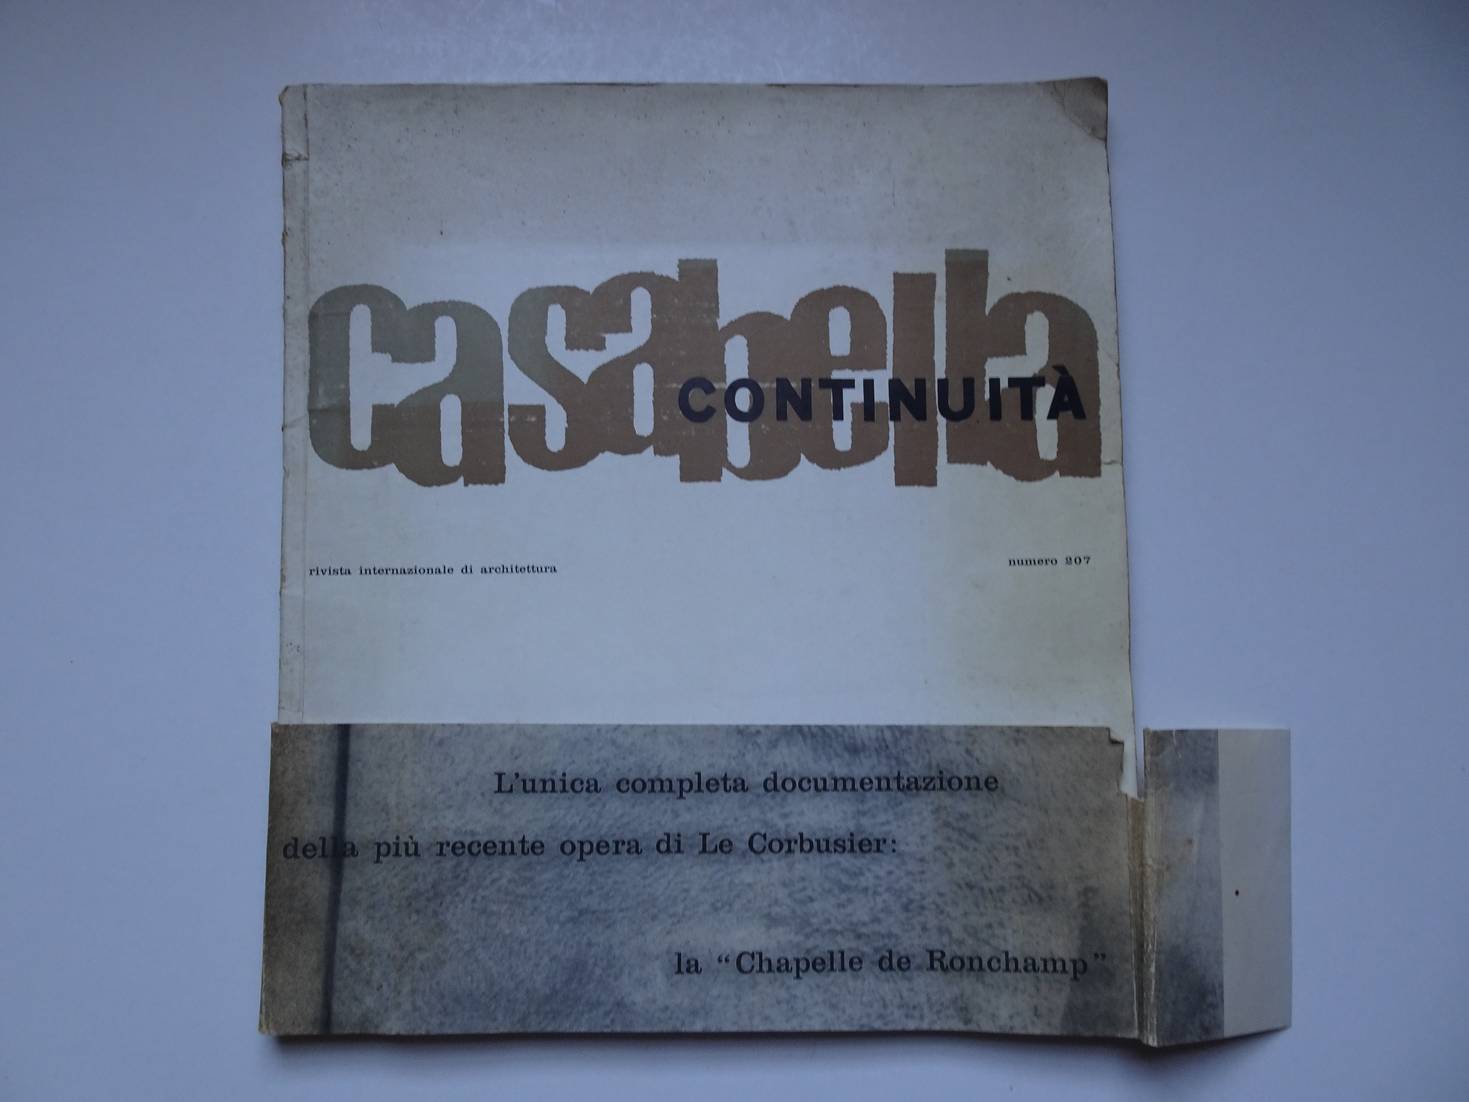 Carlo, Giancarlo de et al. (ed.). - Casabella continuit. Rivista internazionale di architettura. Numero 207.